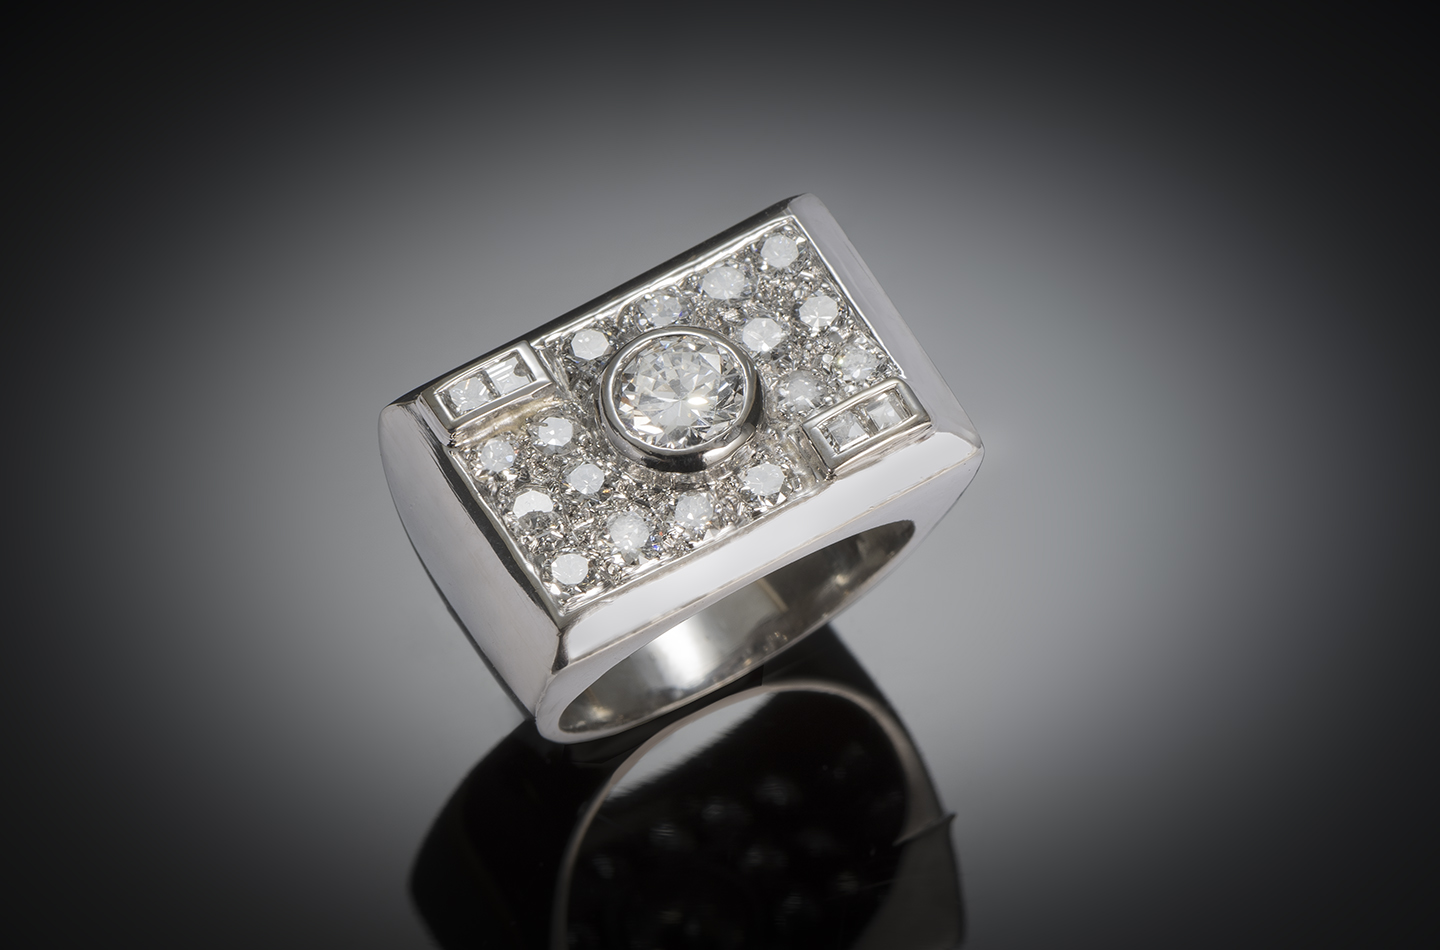 Modernist ring circa 1935 diamonds (2.5 carats center 1 carat)-1